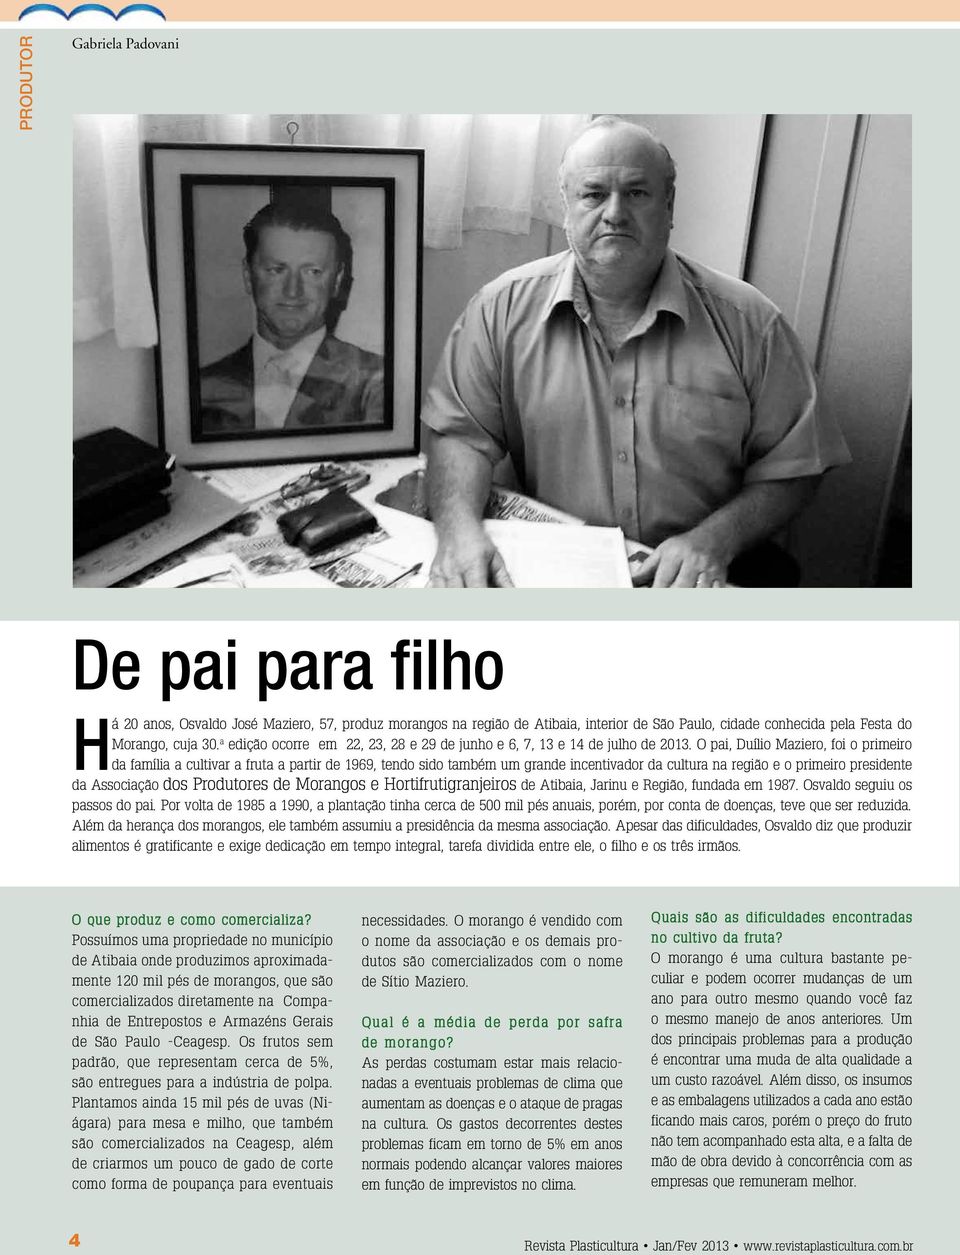 O pai, Duílio Maziero, foi o primeiro da família a cultivar a fruta a partir de 1969, tendo sido também um grande incentivador da cultura na região e o primeiro presidente da Associação dos